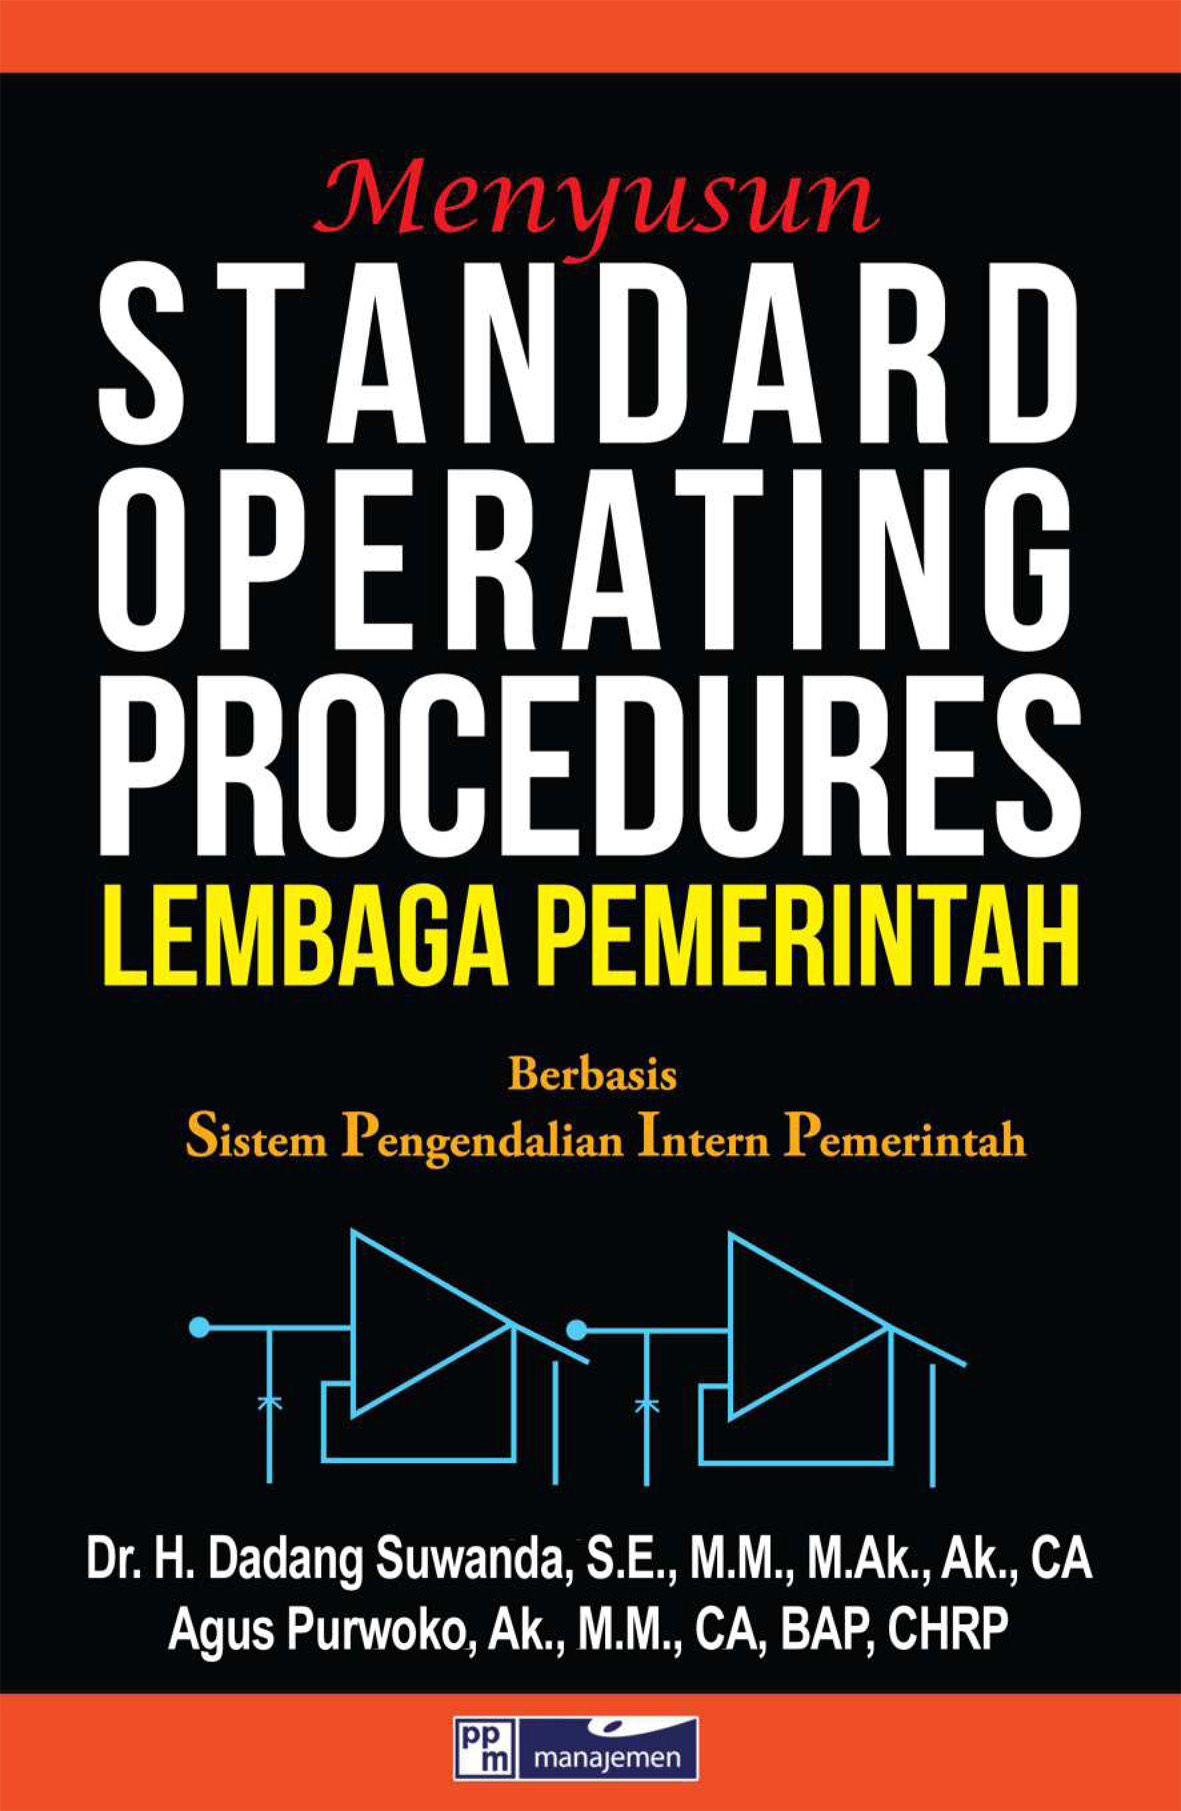 Menyusun standard operating procedures lembaga pemerintah berbasis sistem pengendalian intern pemerintah [sumber elektronis]